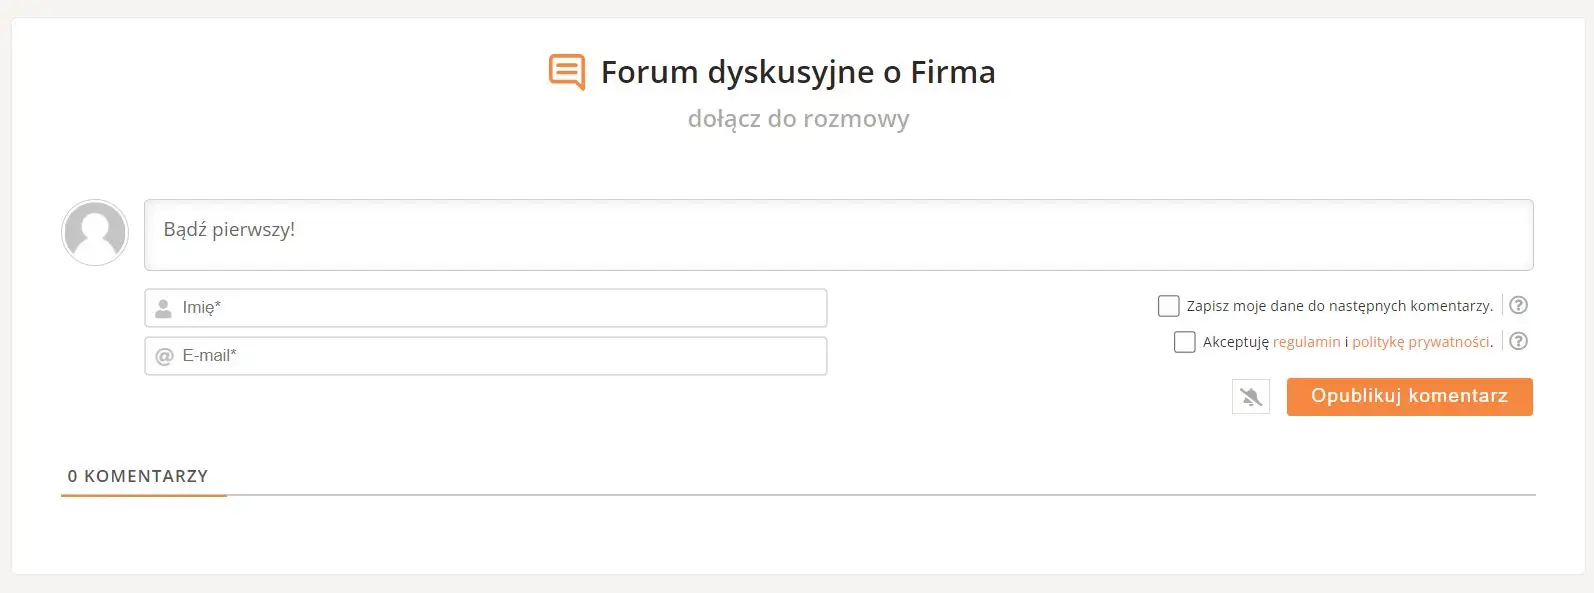 Komentarze na forum dyskusyjnym w enerad.pl